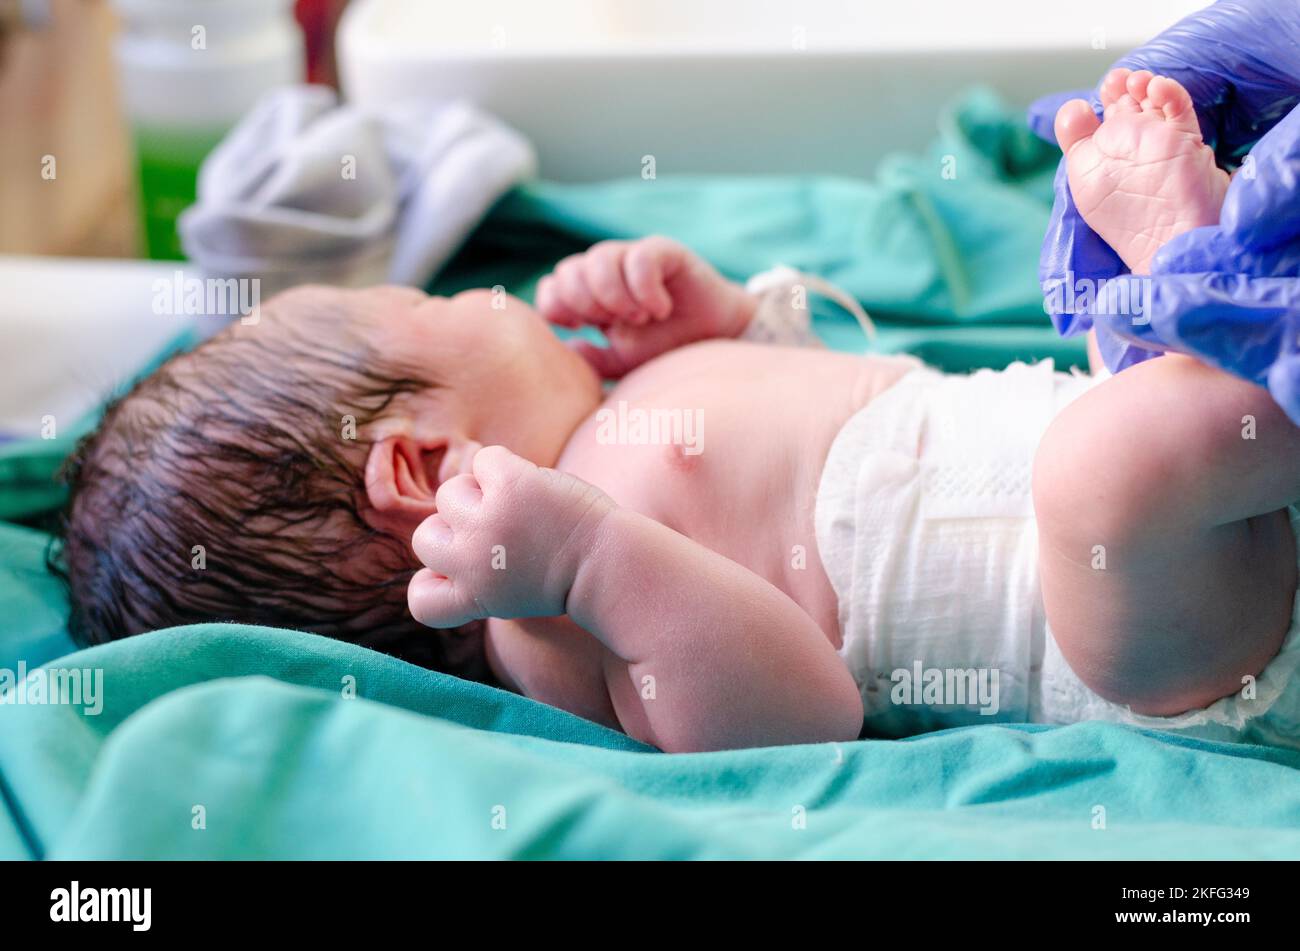 Un neonato che viene ripulito dopo la nascita. Foto Stock